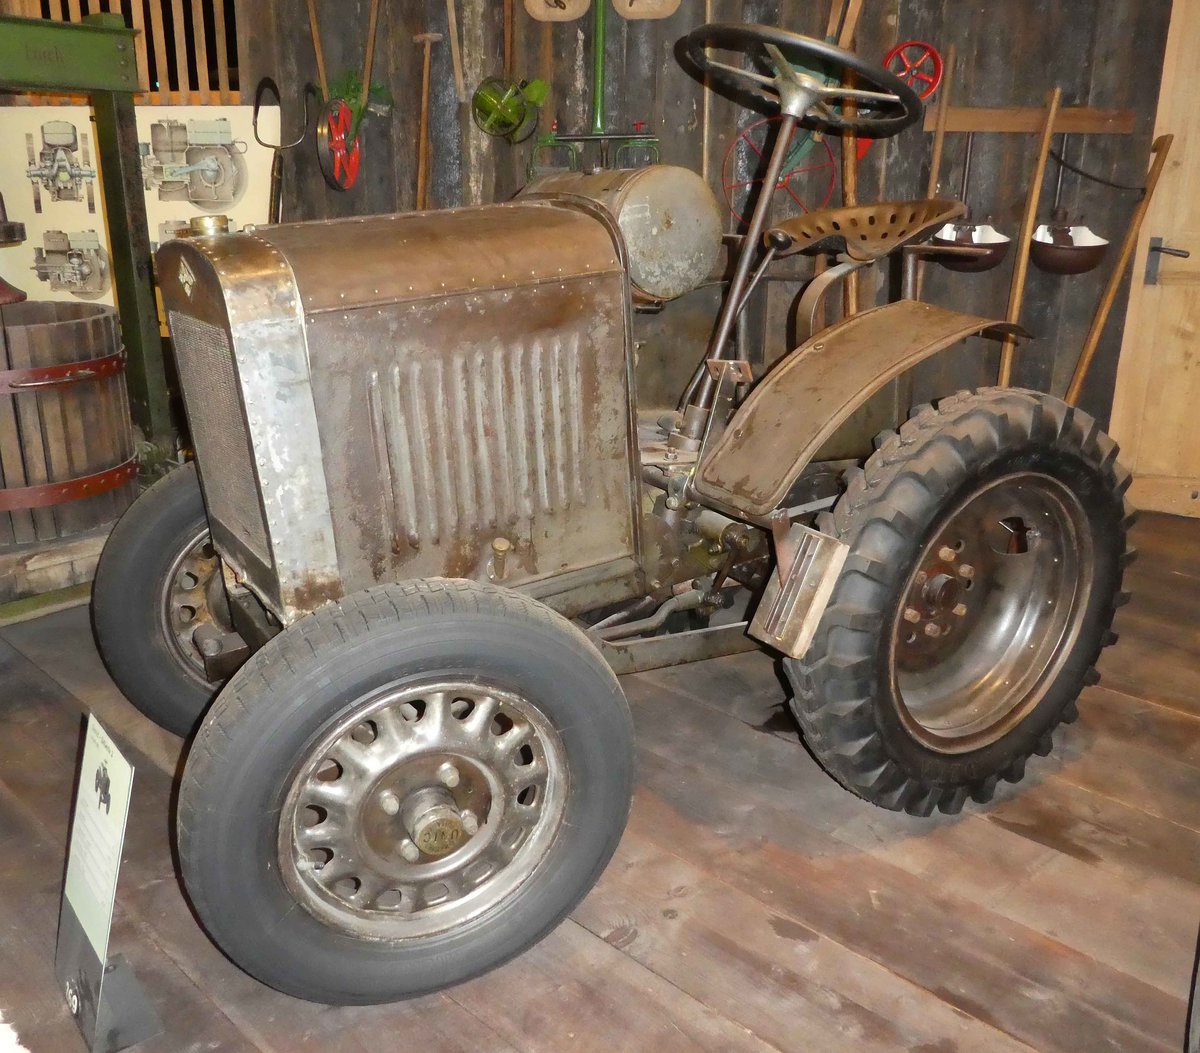 =David - D 4 Serie 2 (gefertigt in Tours/F), Bj. 1932, 1670 ccm, 10 PS, ausgestellt im Auto & Traktor-Museum-Bodensee, 10-2019